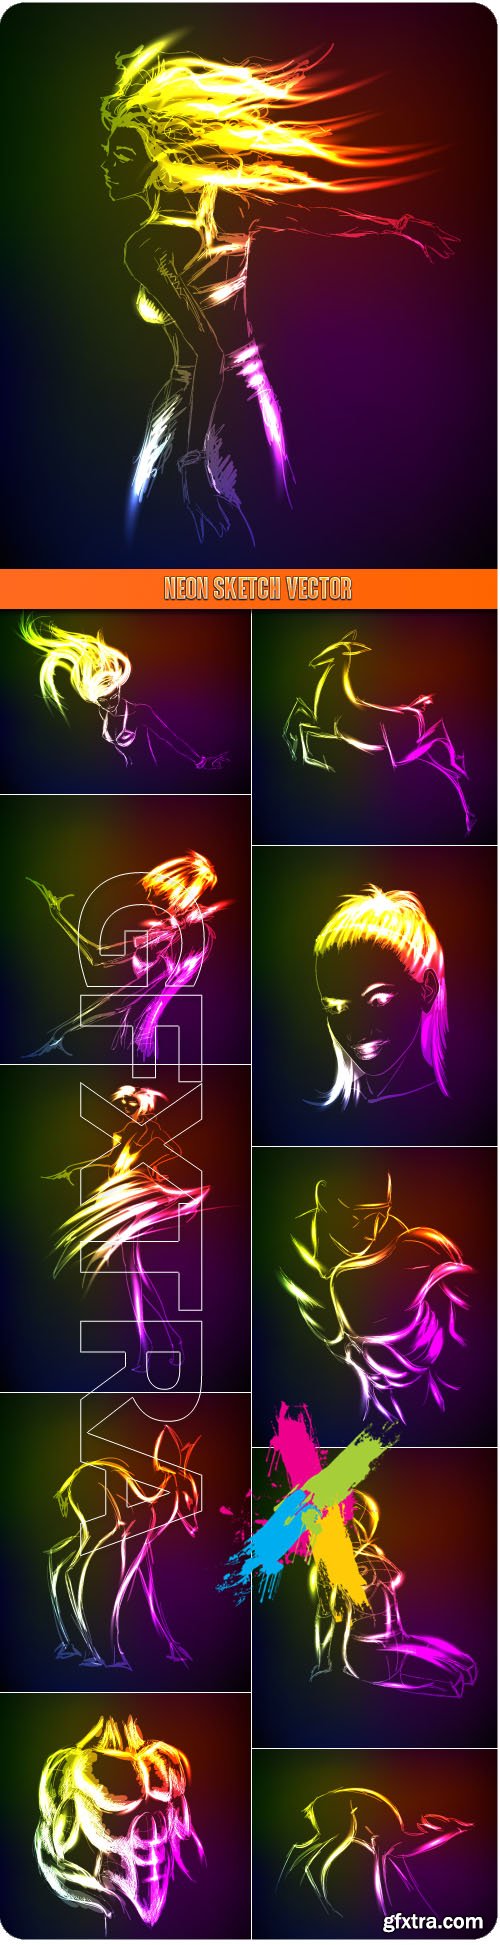 Neon sketch vector